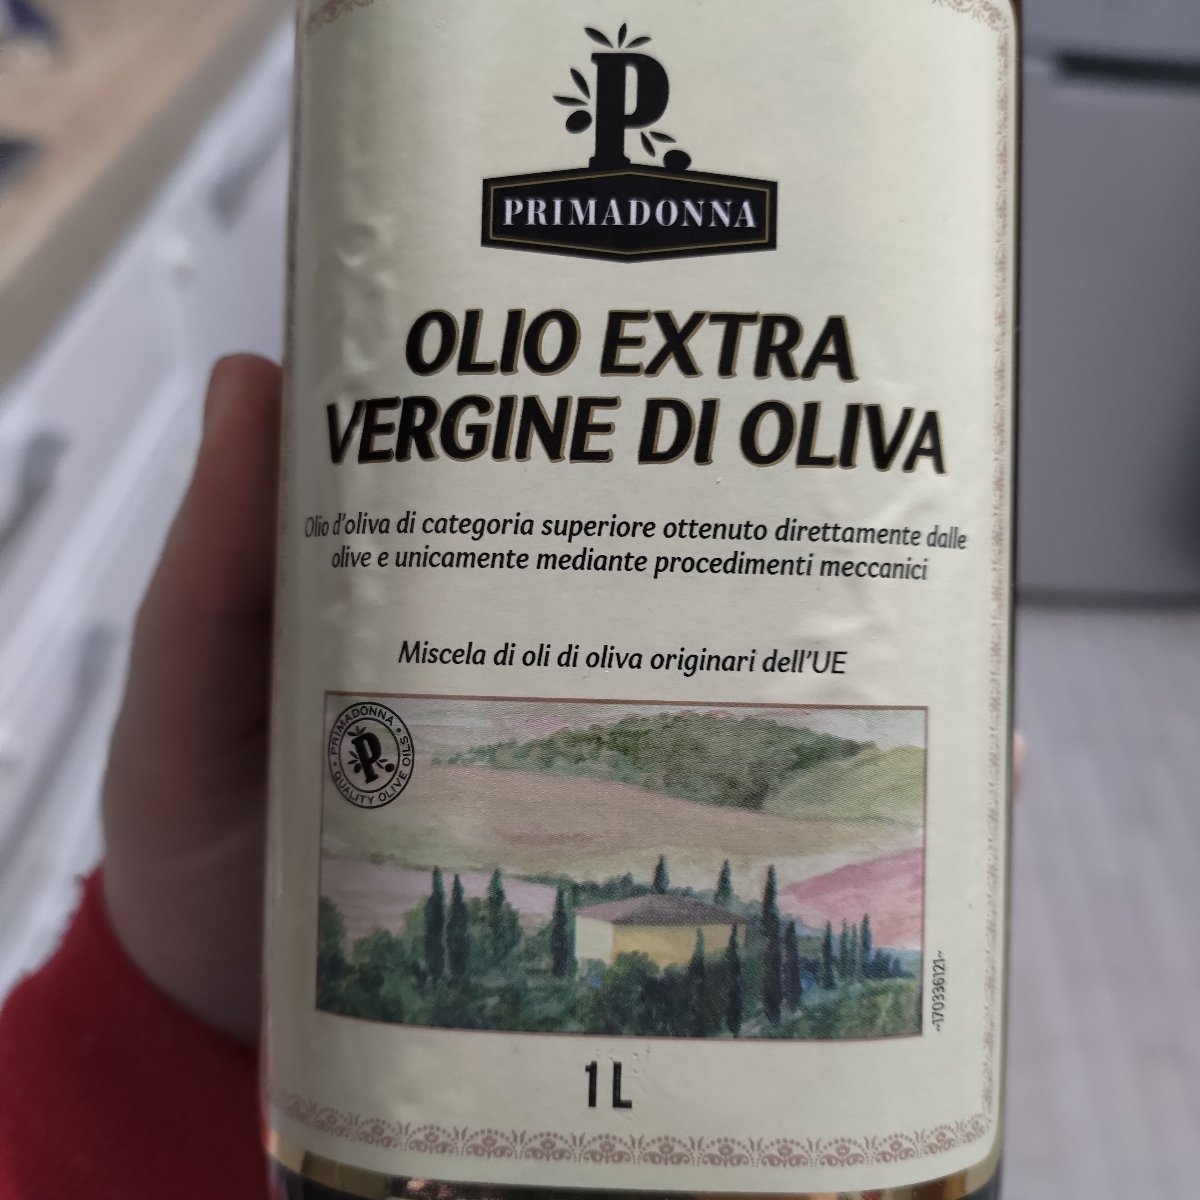 Primadonna Olio Extra Vergine Di Oliva Review | abillion